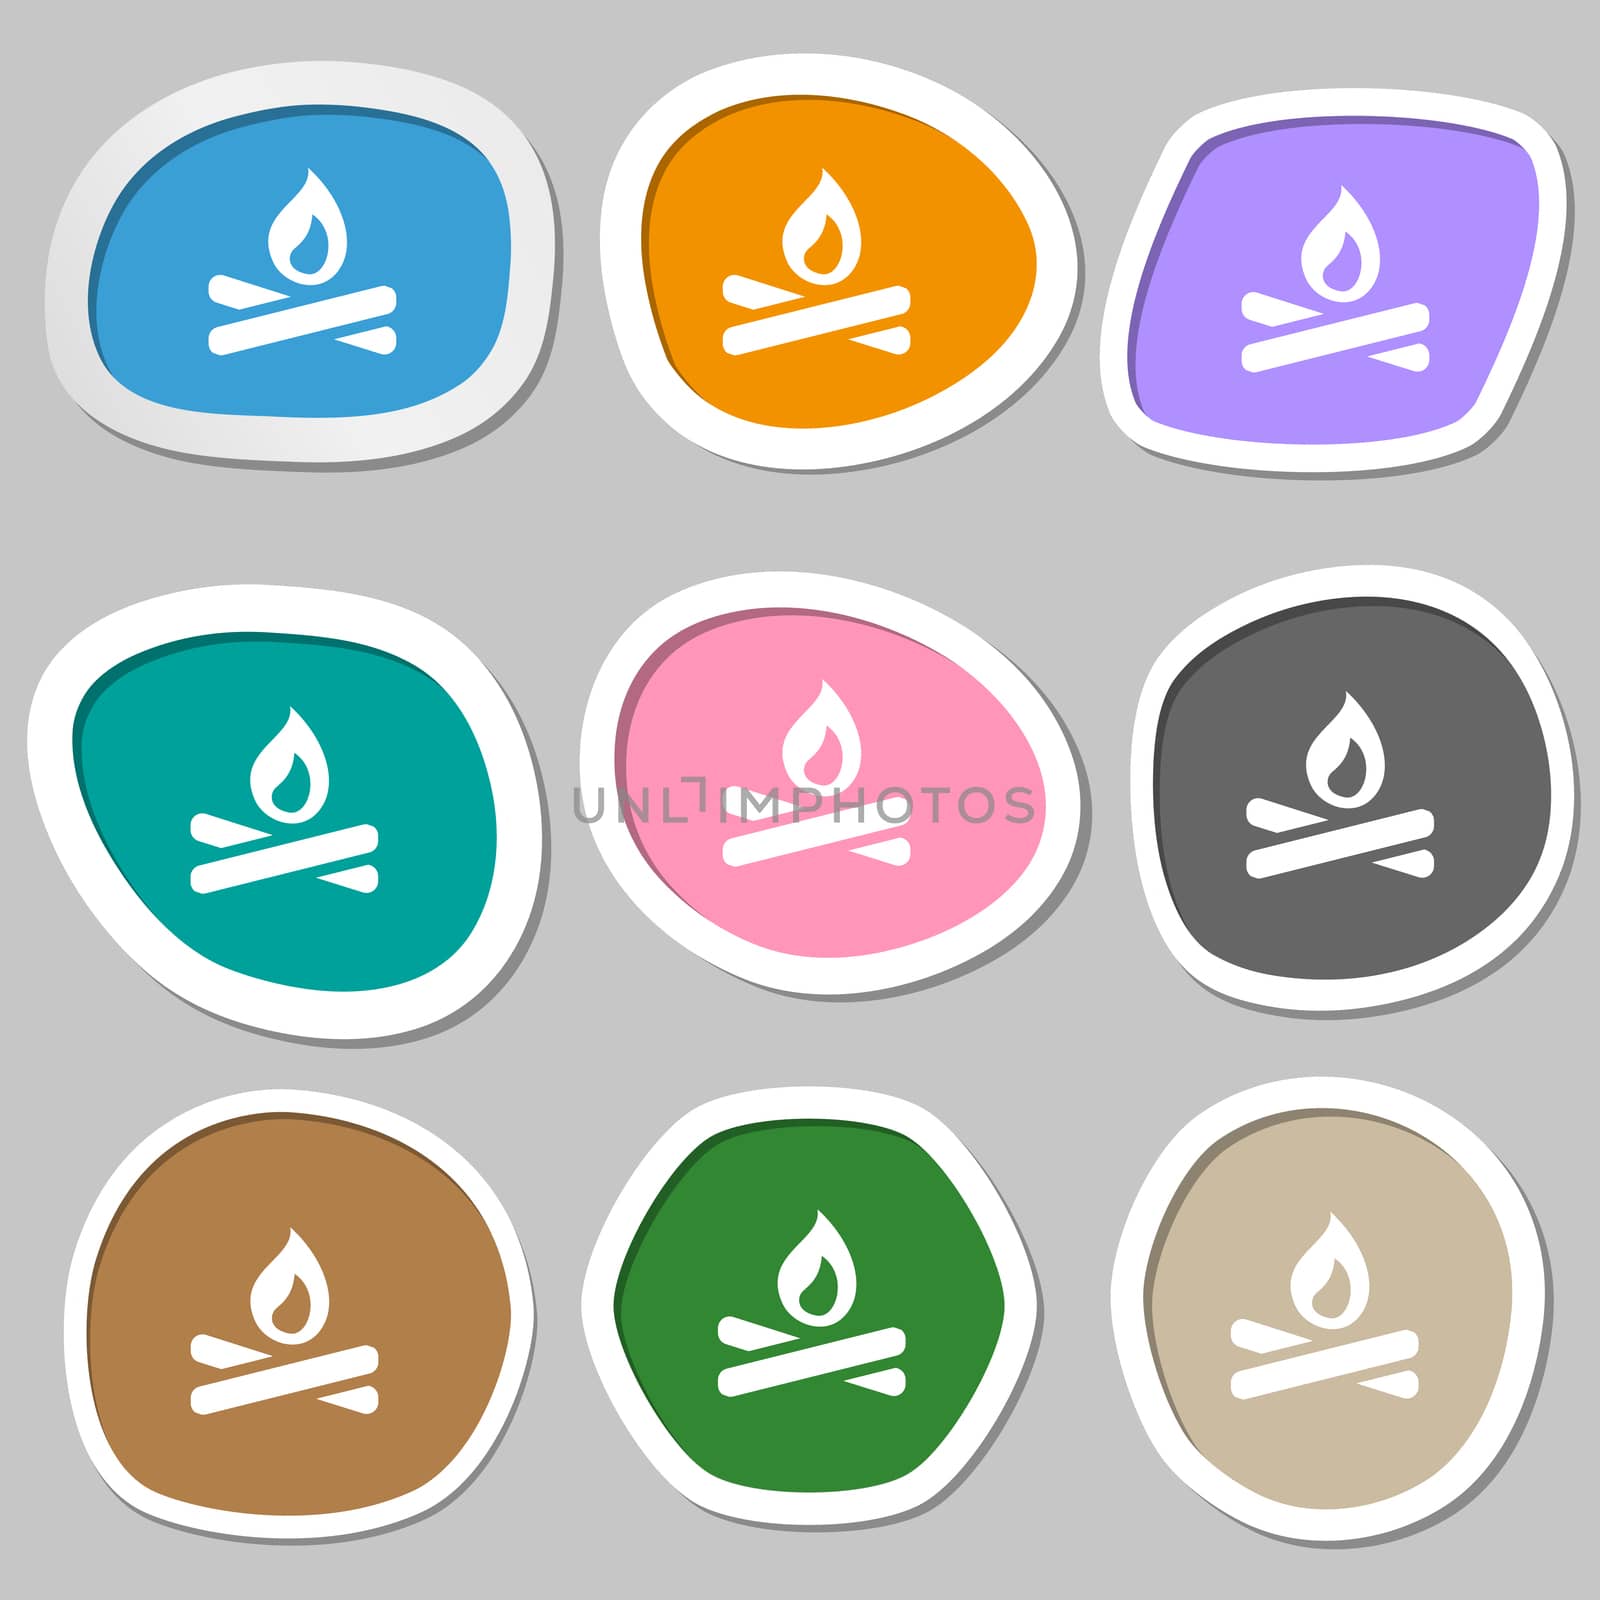 Fire flame icon symbols. Multicolored paper stickers. illustration